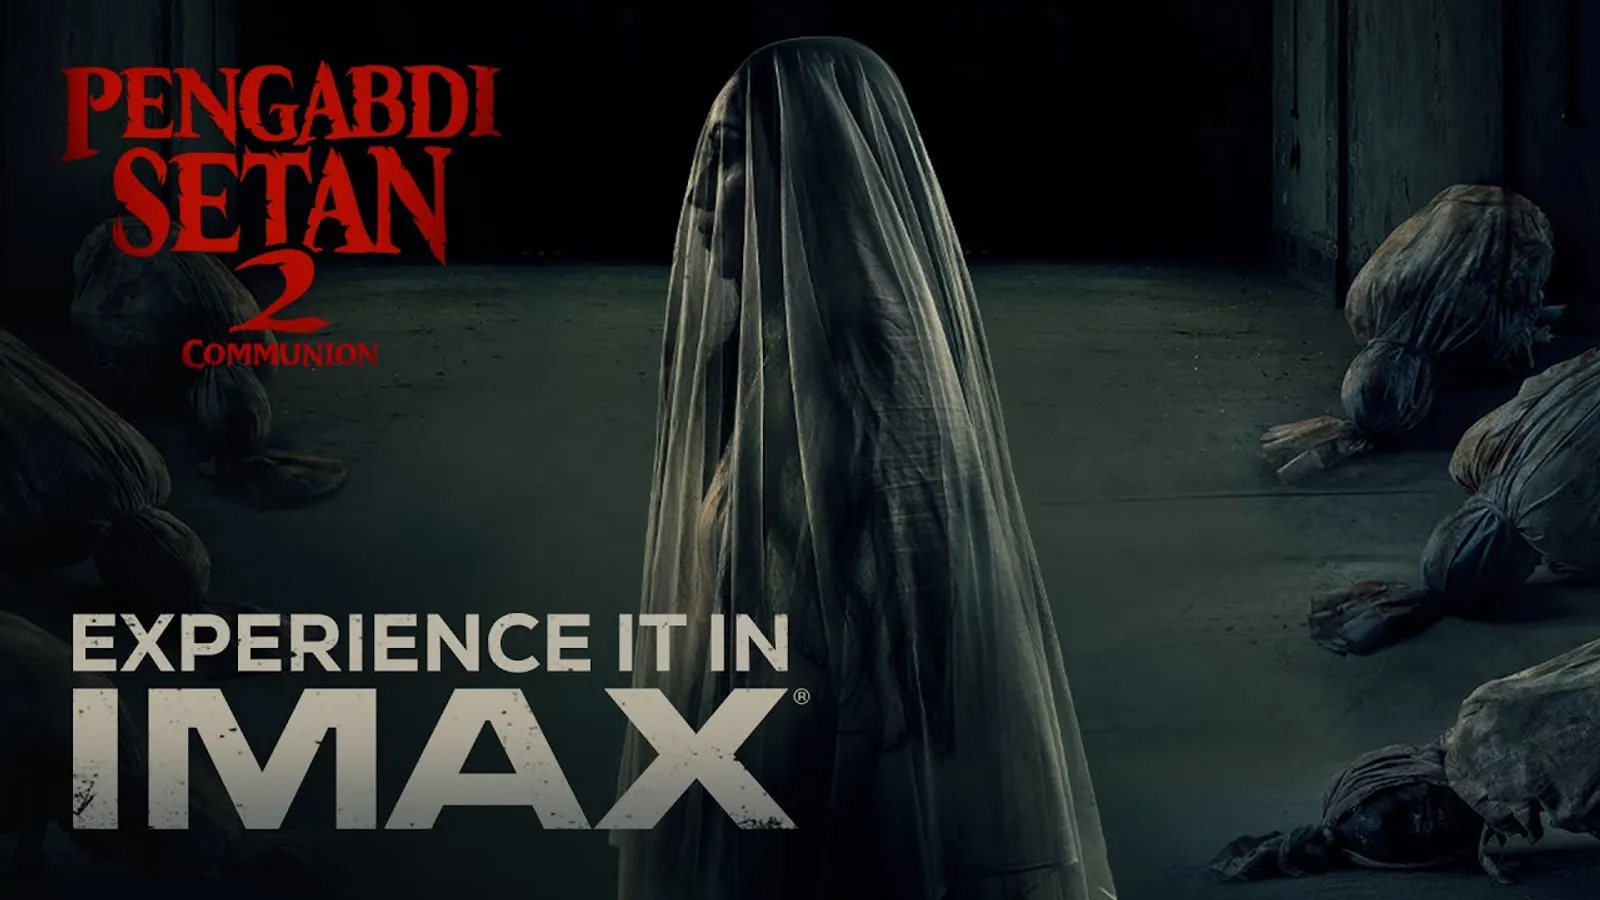 Gunakan Teknologi IMAX Digital Remastering, Fakta "Pengabdi Setan 2"